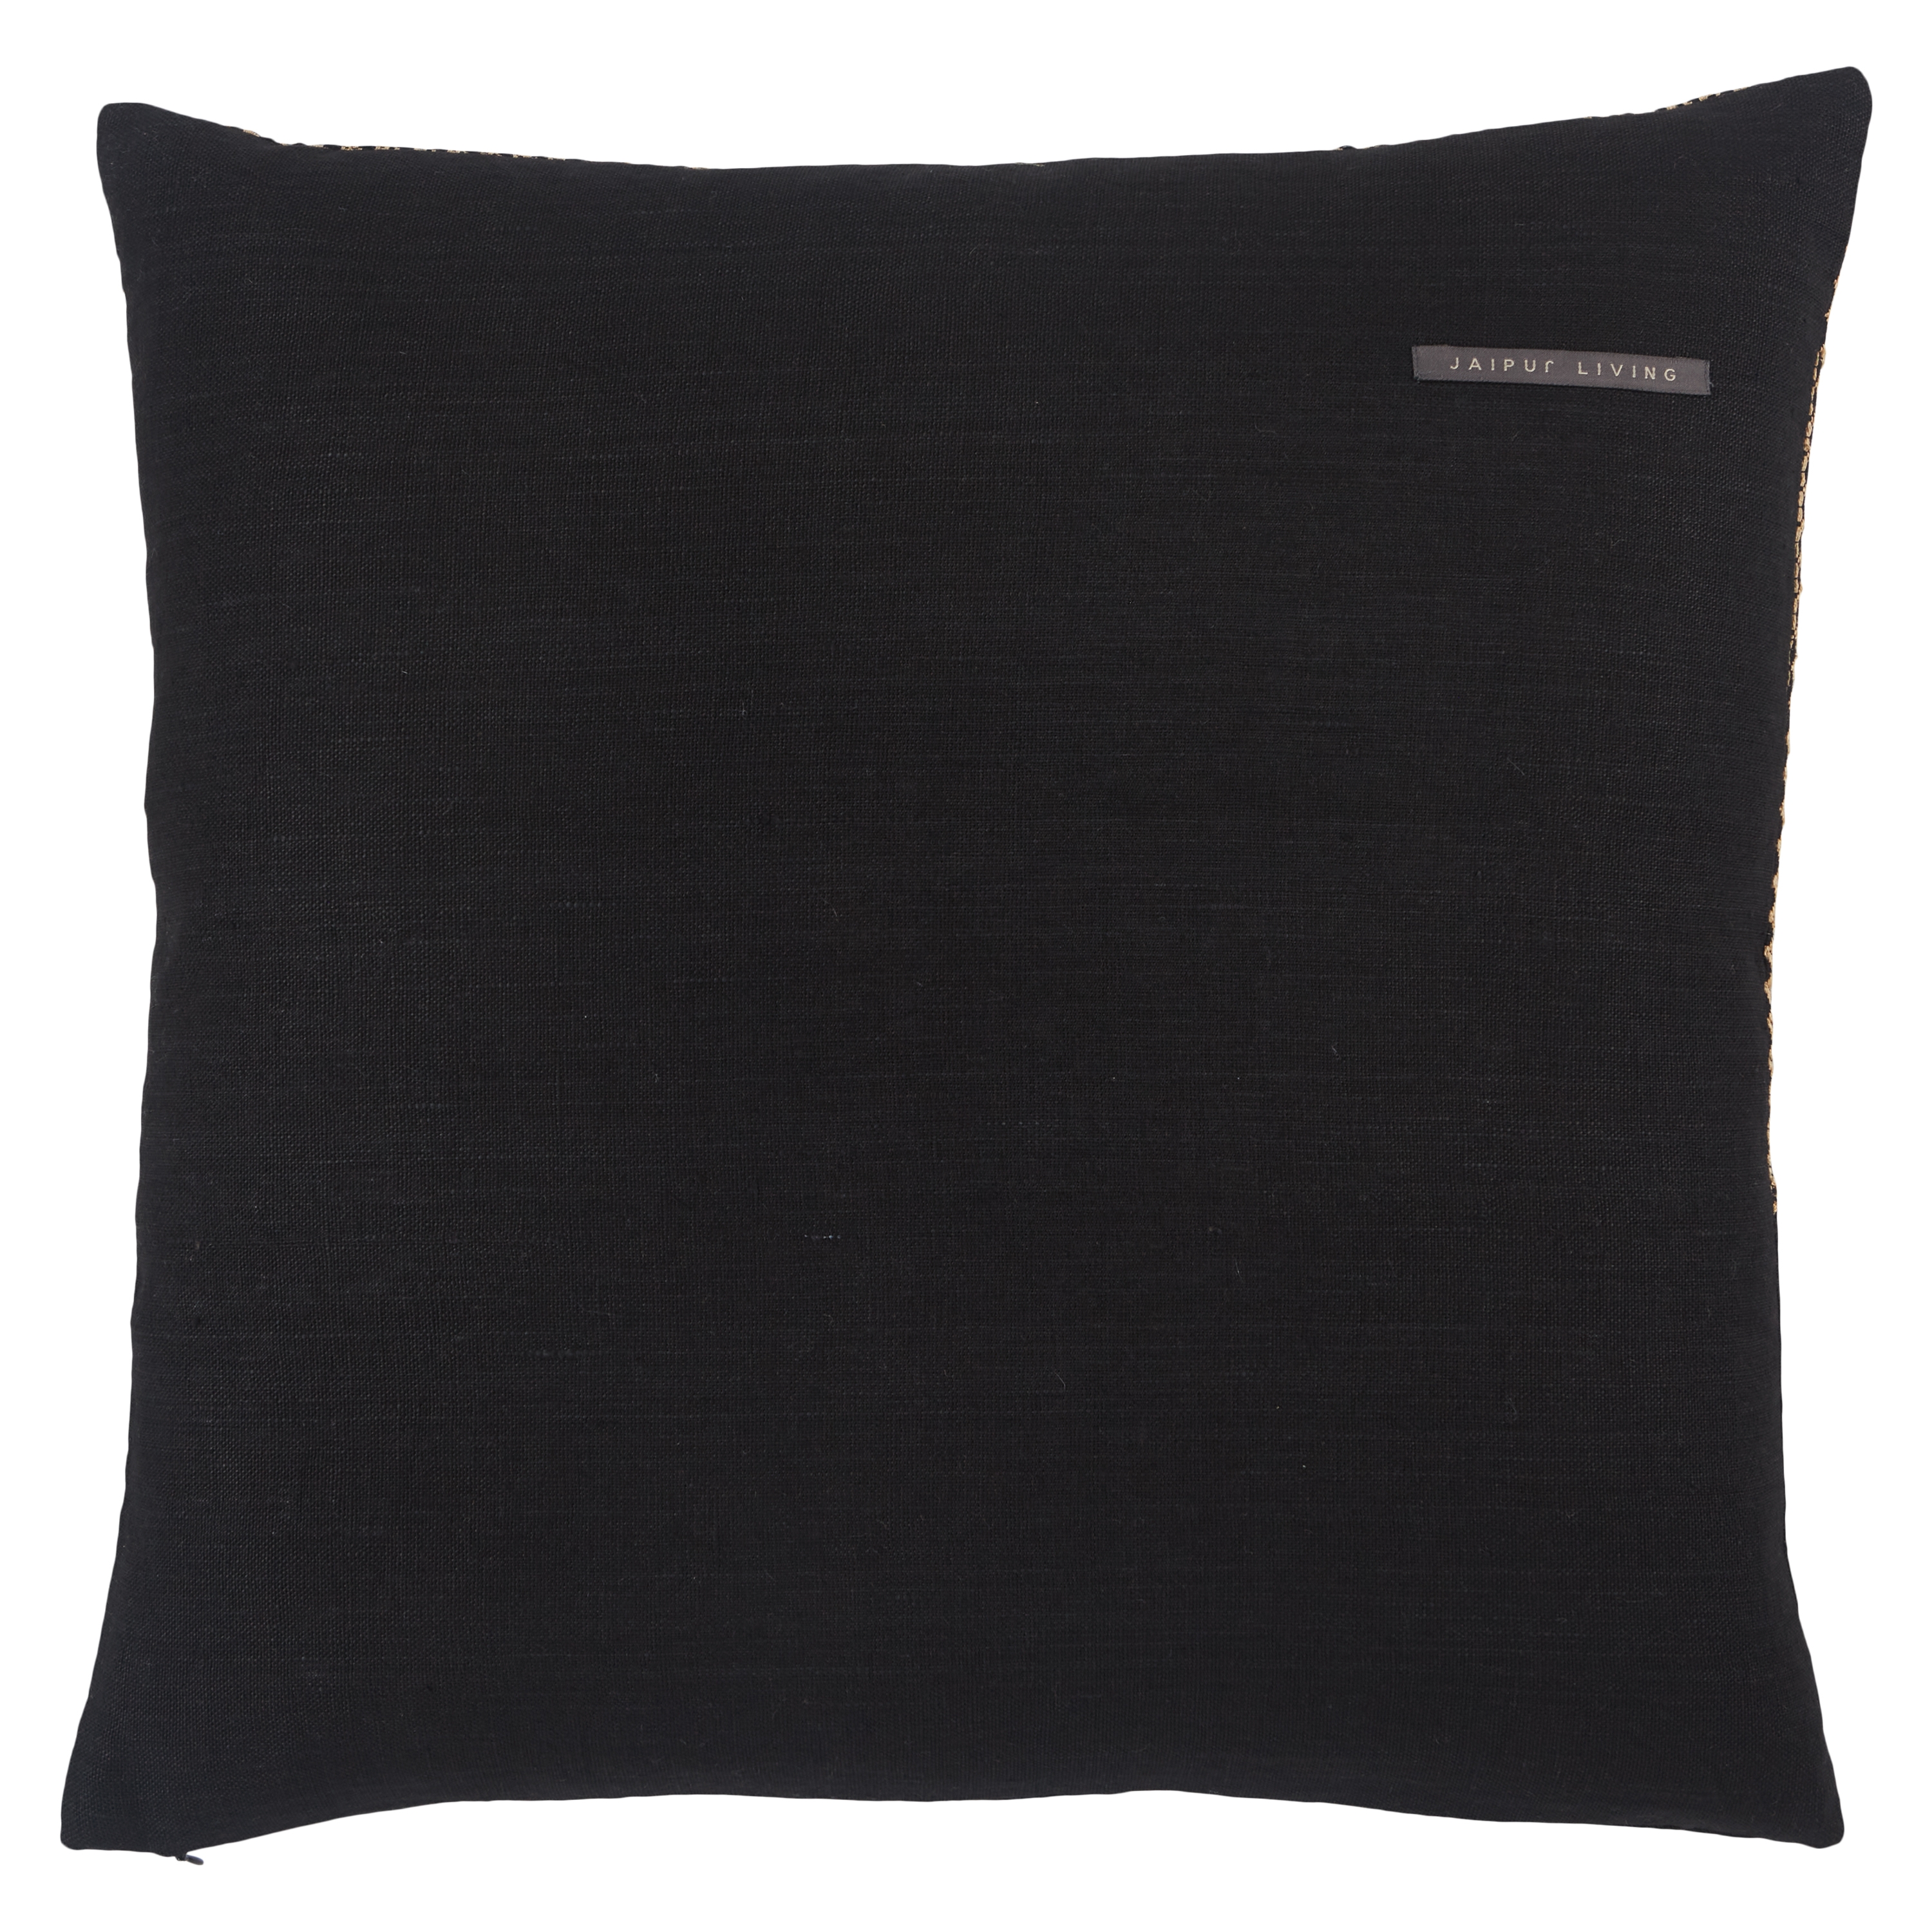 Design (US) Light Tan 22"X22" Pillow - Image 1